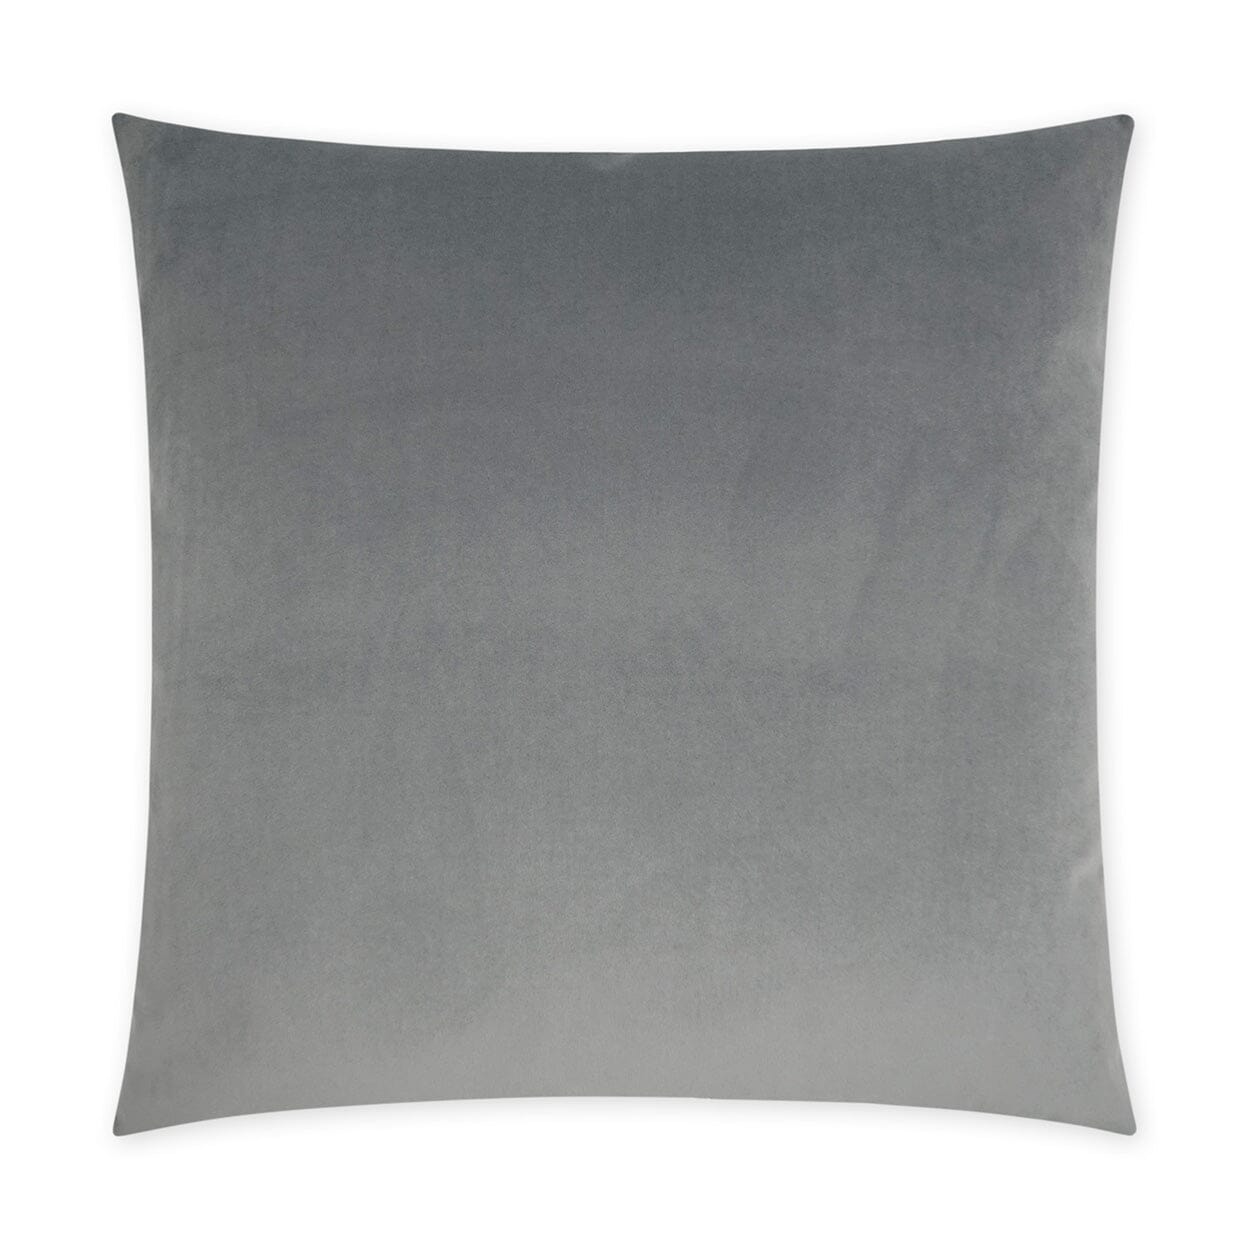 D.V. Kap 24" x 24" Decorative Throw Pillow | Posh Duo Grey Pillows D.V Kap Home